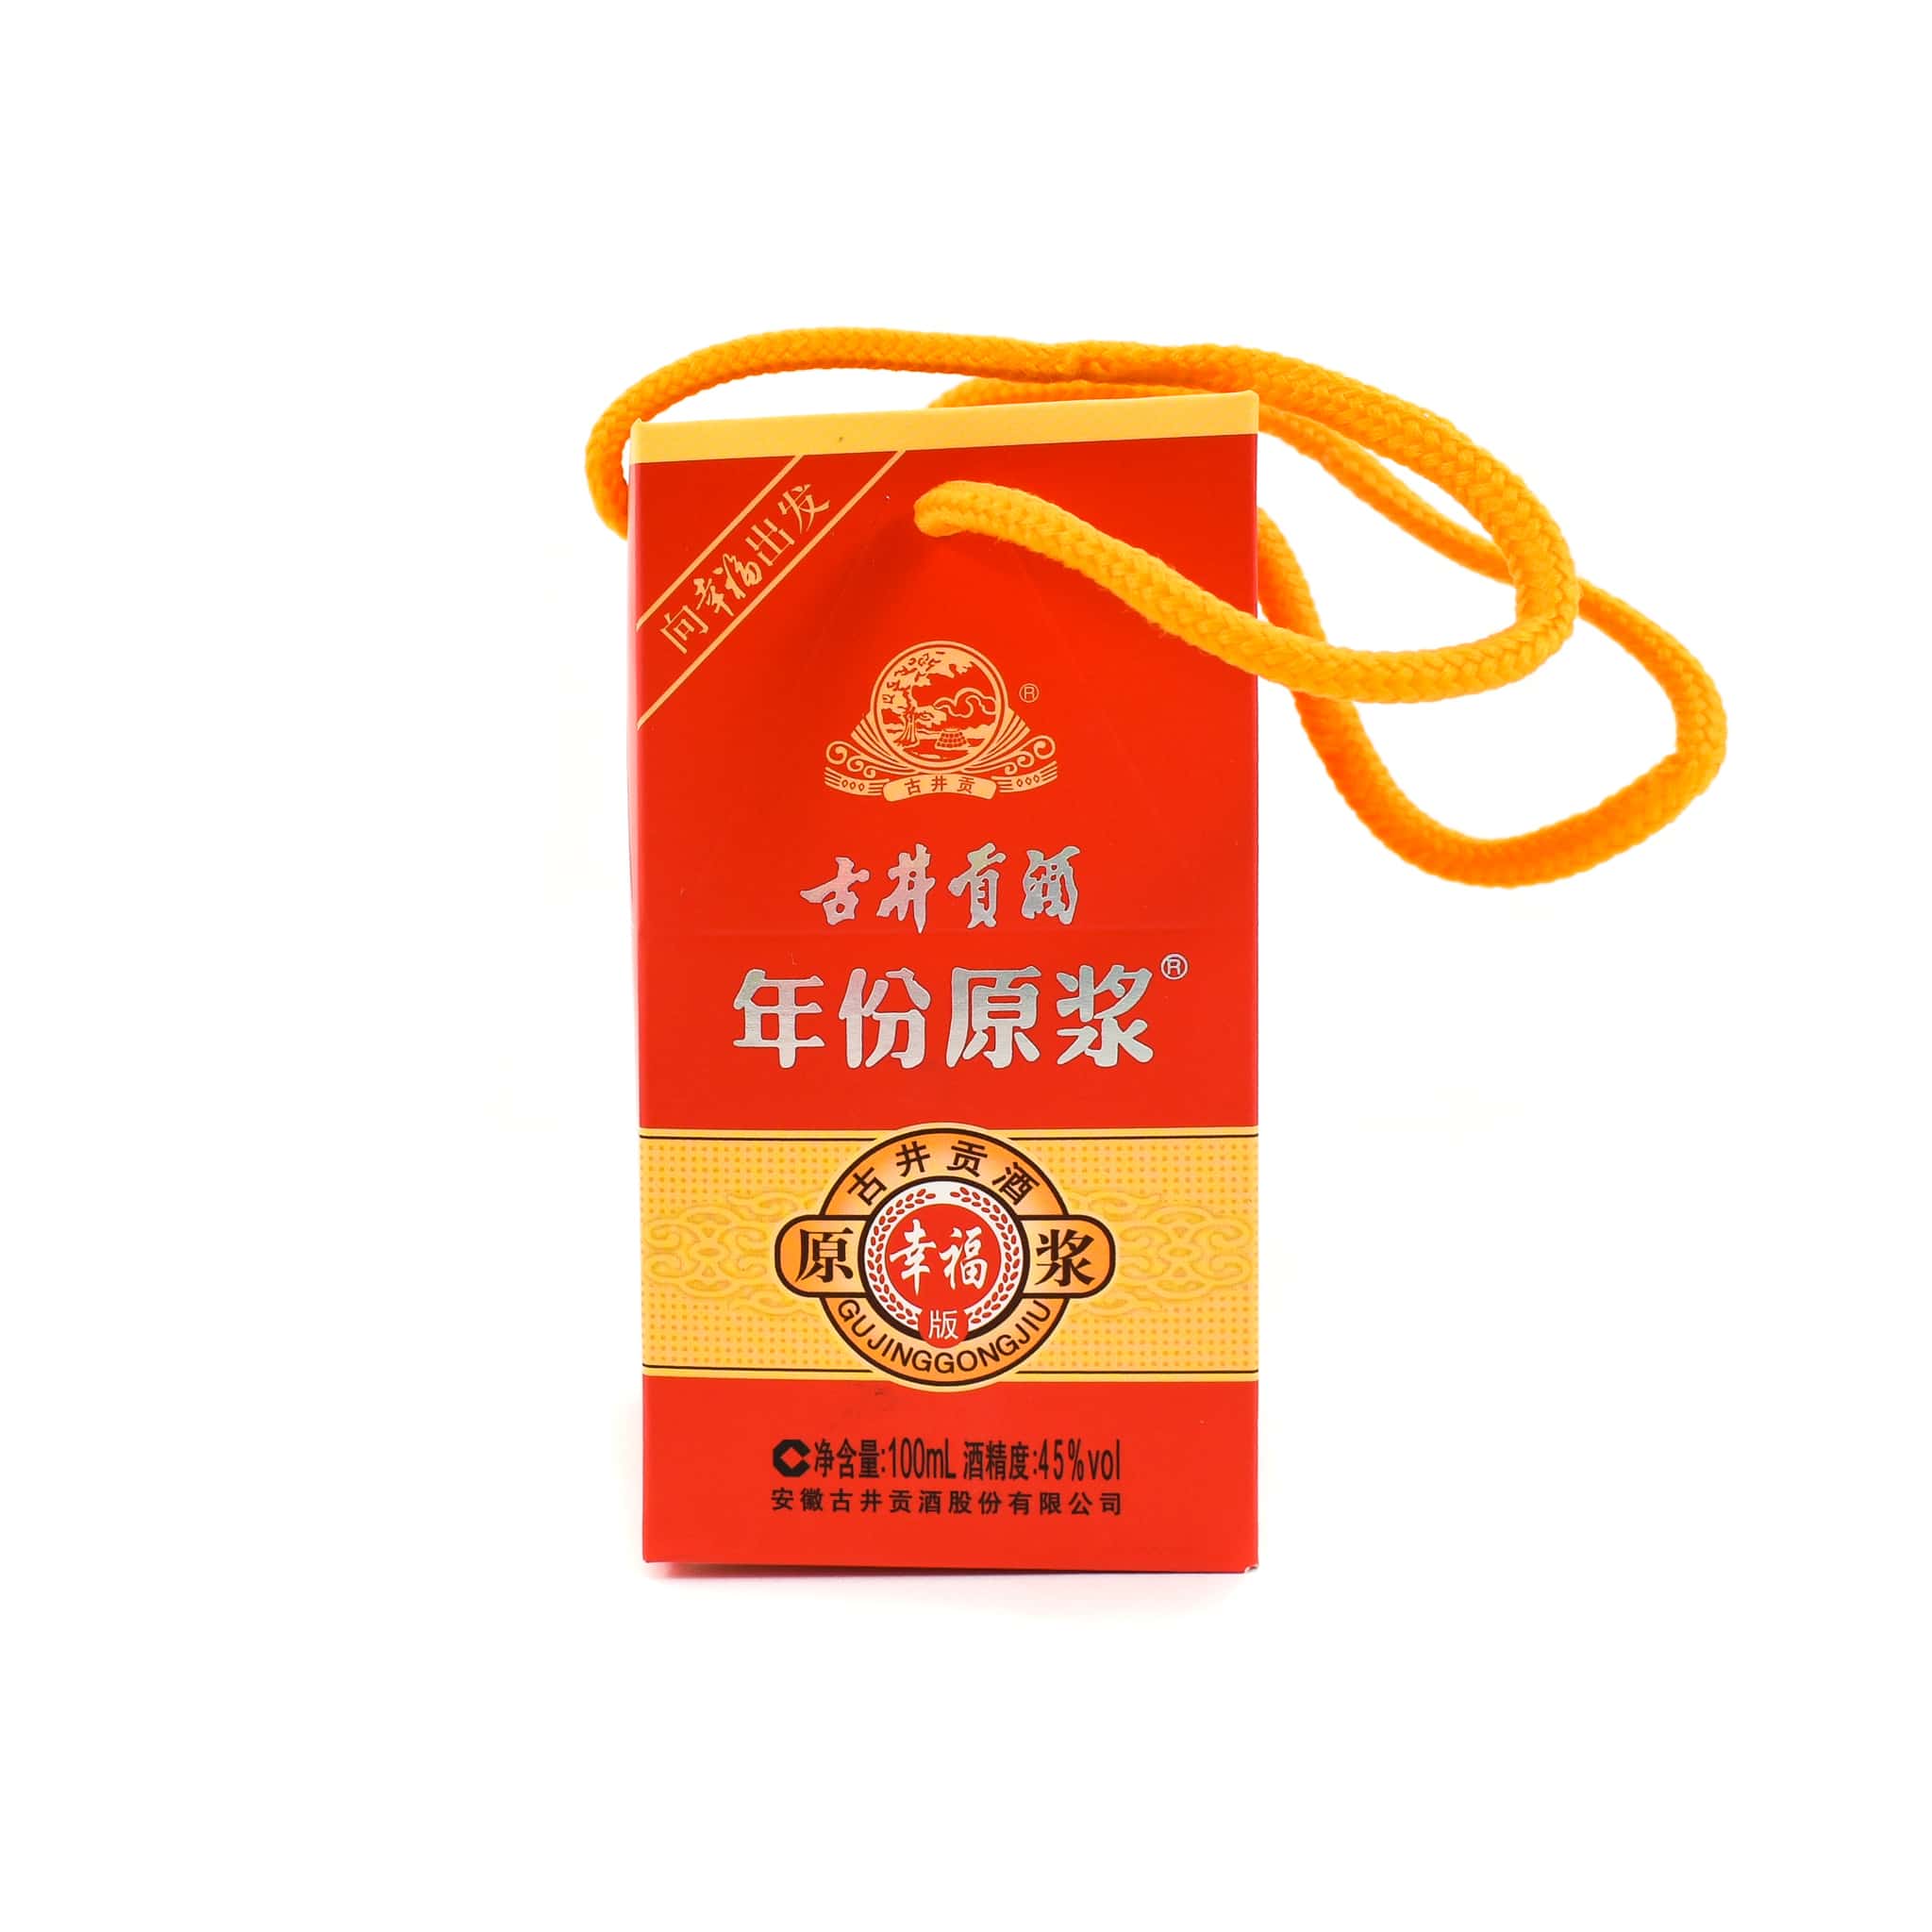 Gujinggong Chiew Red Bottle Baijiu 45%